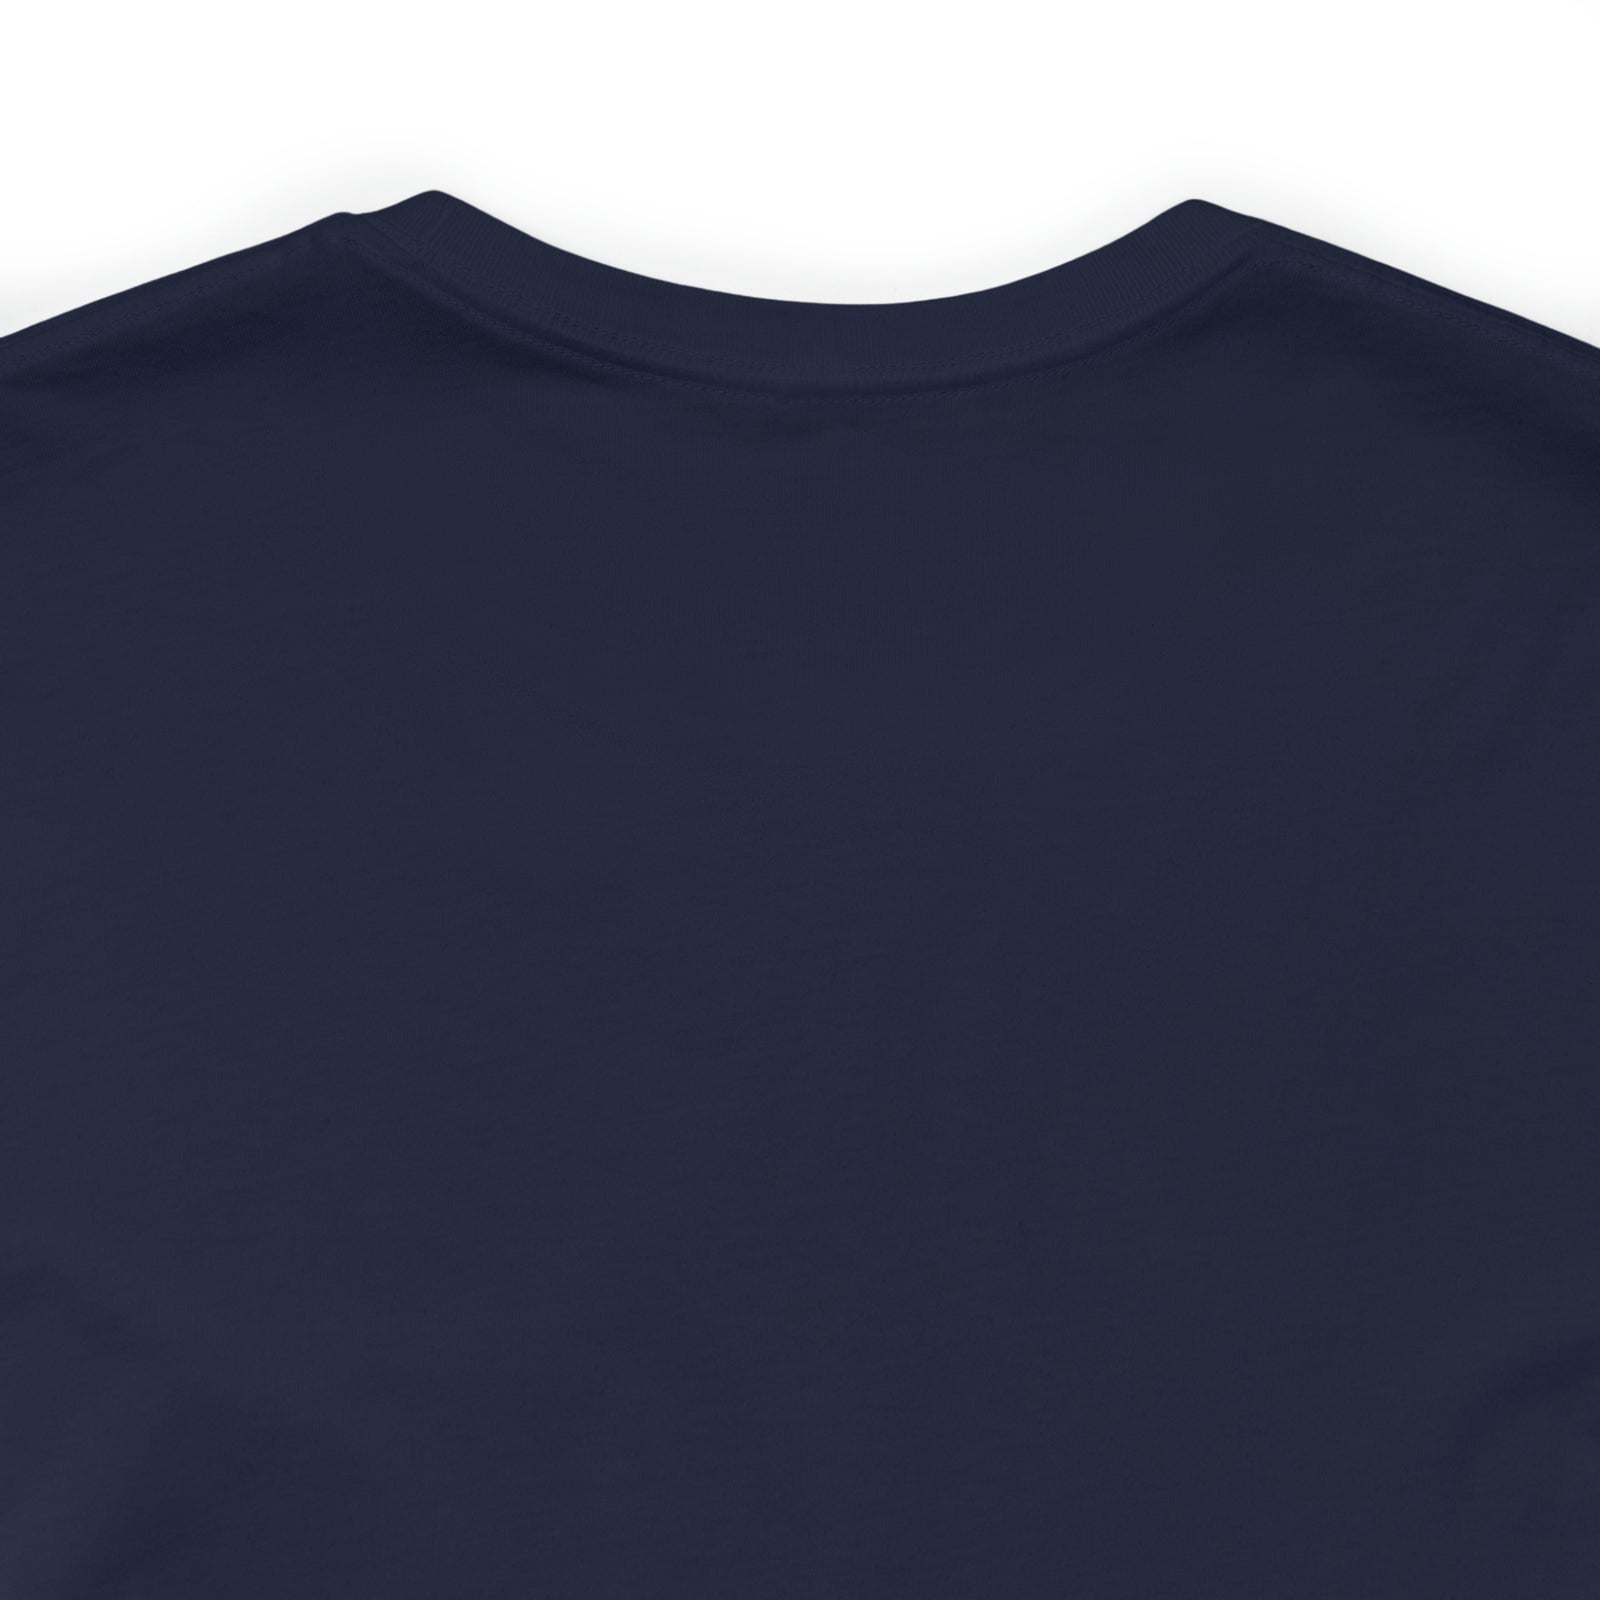 More Than The Score Spirit League Logo Shirt | Unisex Jersey Short Sleeve Tee